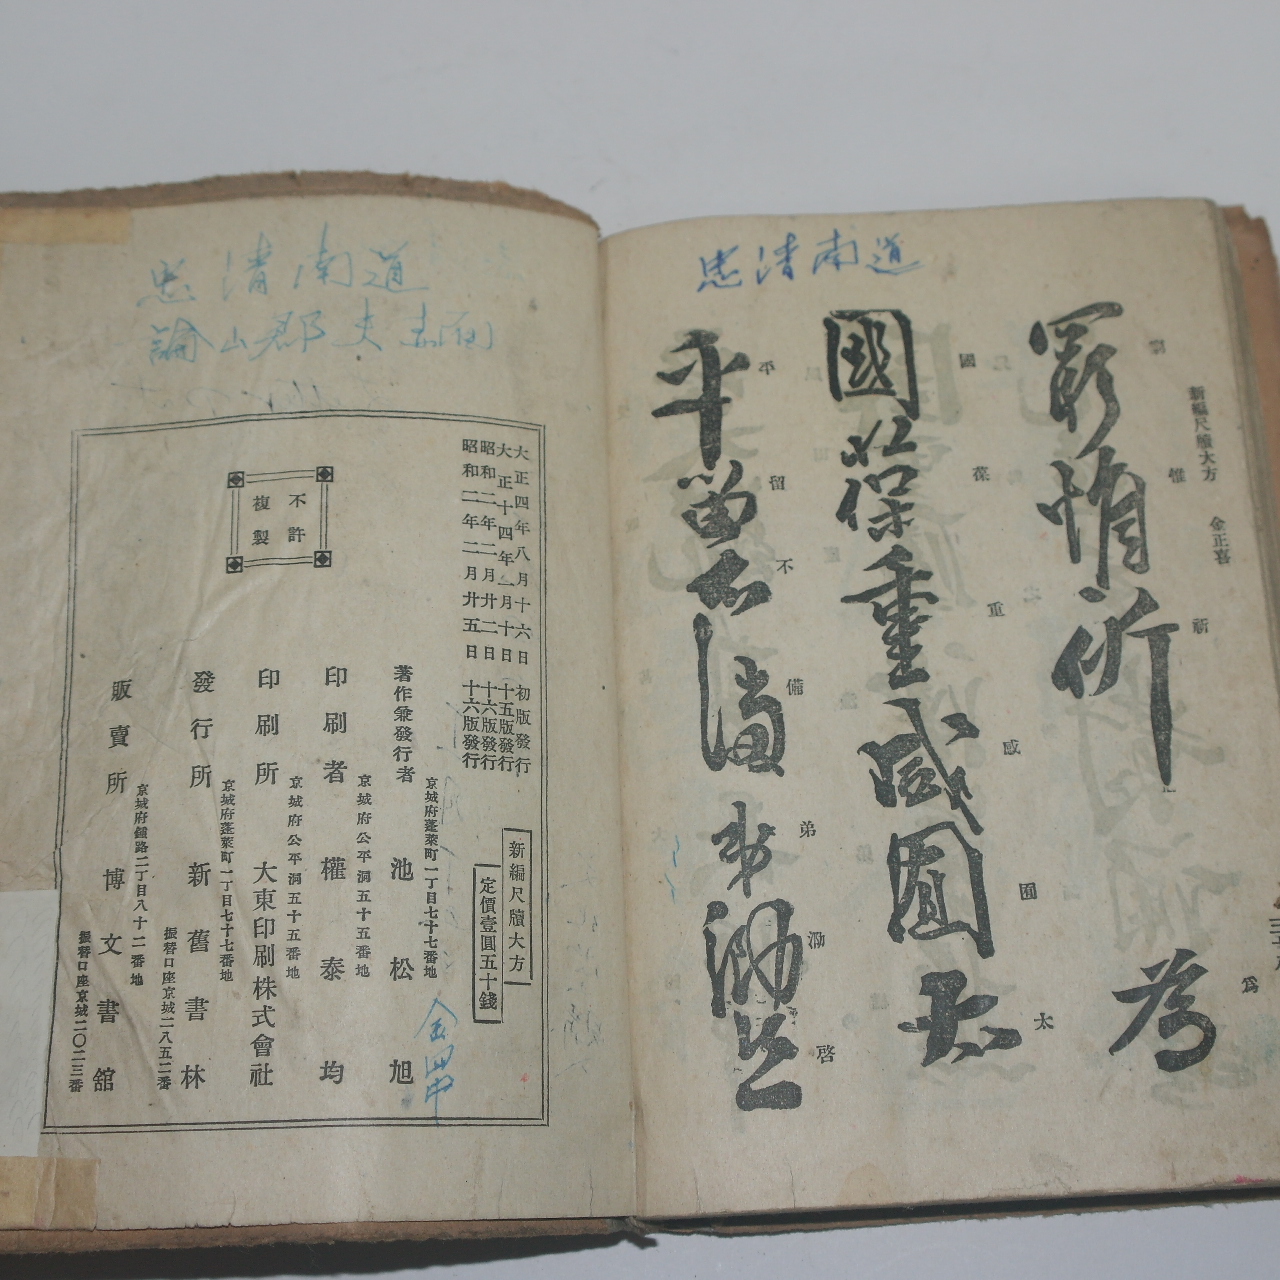 1927년 신편 척독대방(尺牘大方) 1책완질